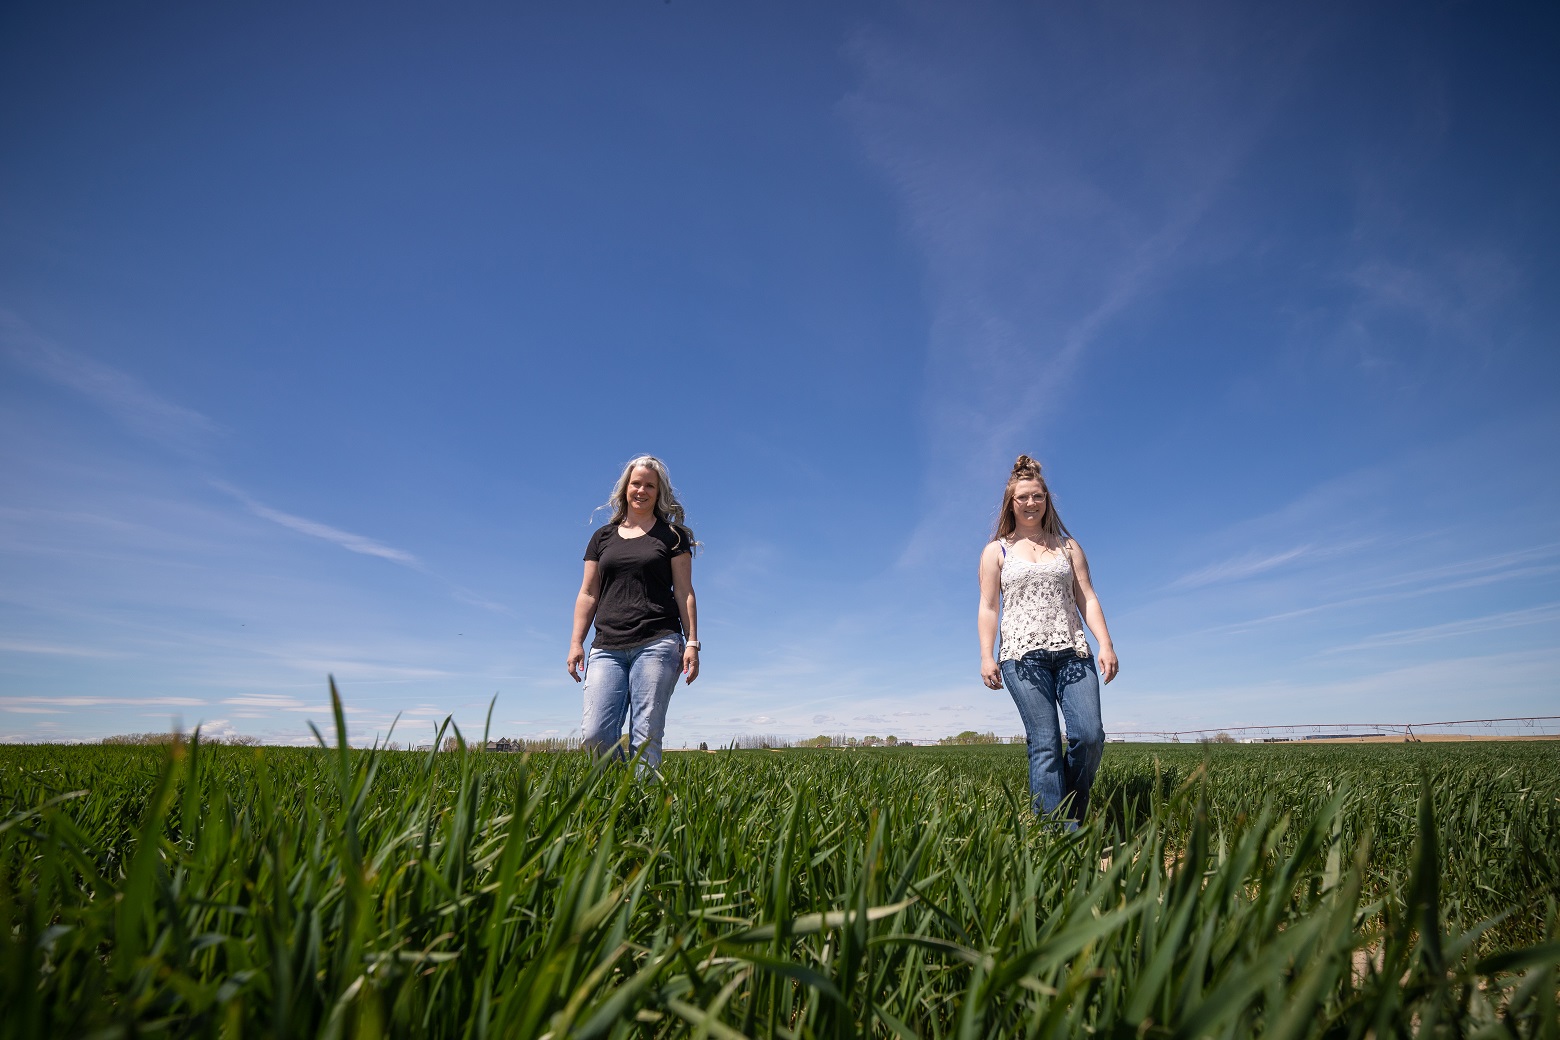 two women walk side by side through a field of winter wheat